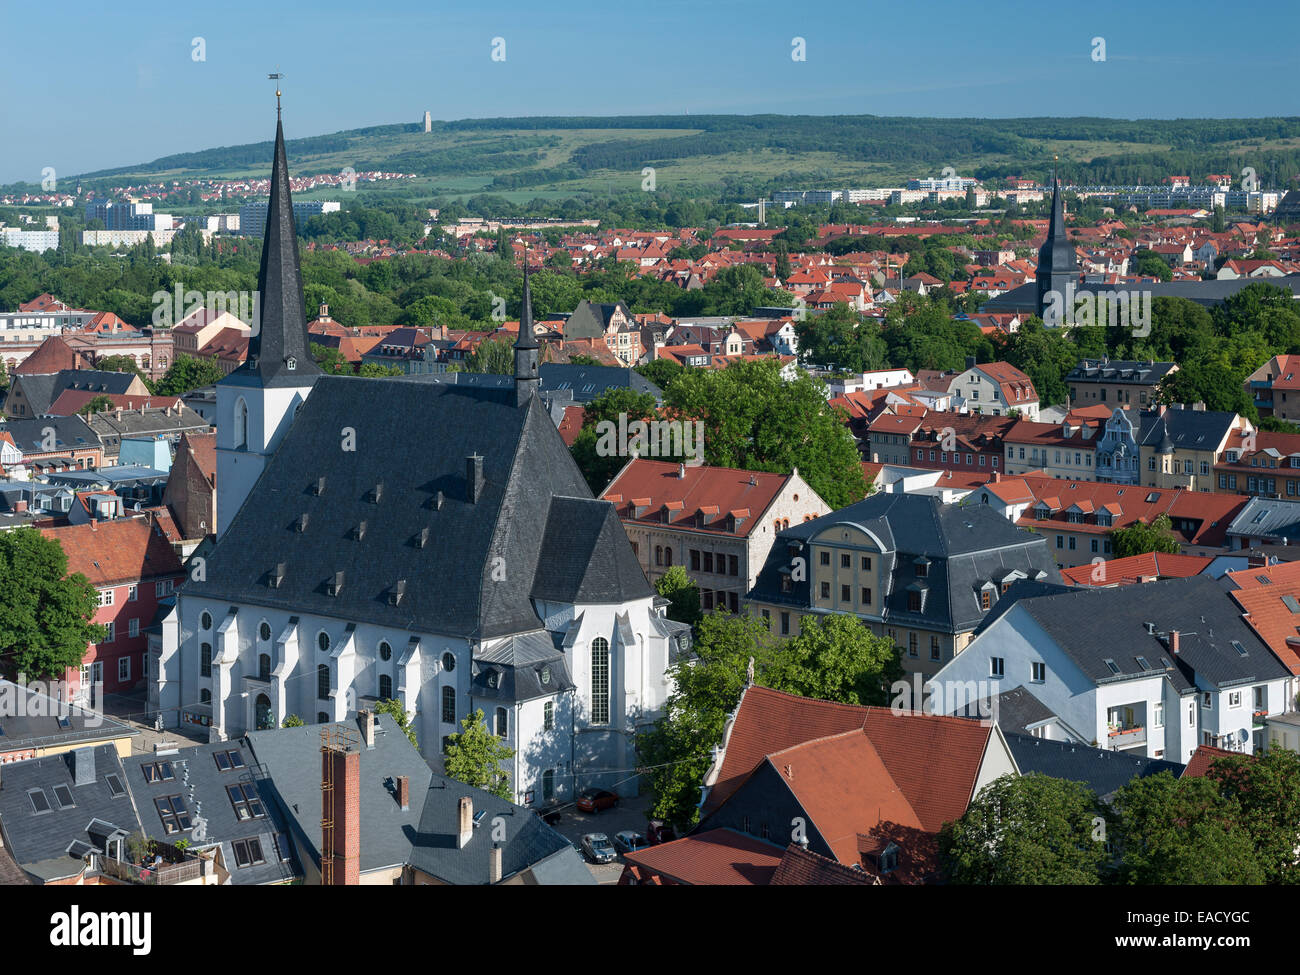 Il centro storico di Weimar con Herderkirche Chiesa, Jakobskirche chiesa e la collina di Ettersberg sul retro, centro storico, Weimar Foto Stock